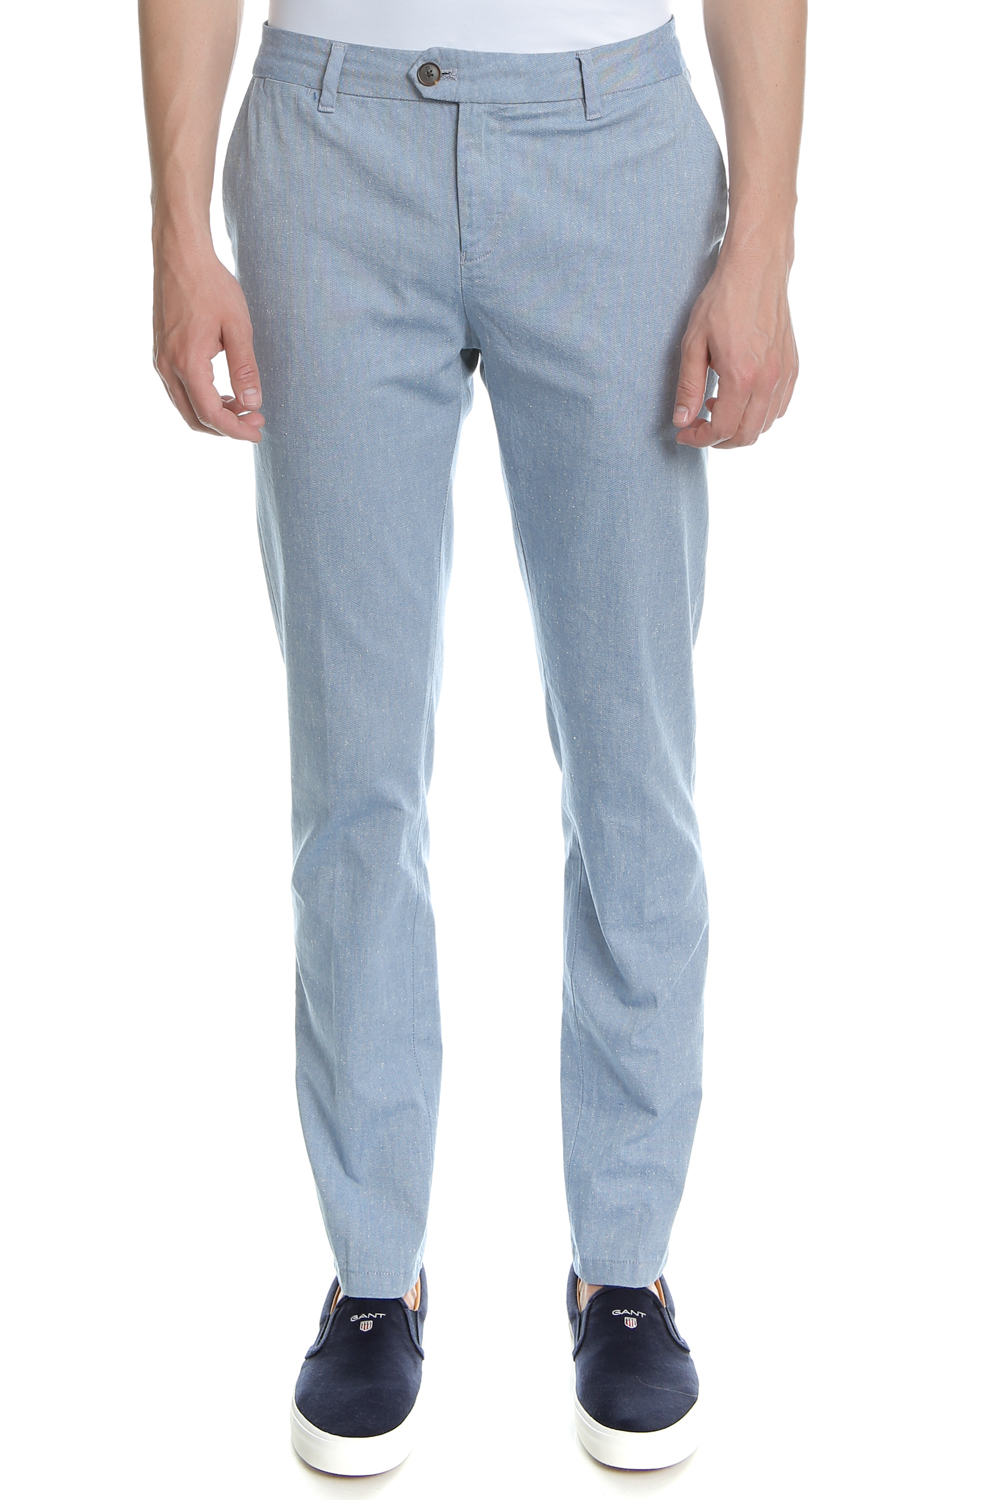 Ανδρικά/Ρούχα/Παντελόνια/Ισια Γραμμή SCOTCH & SODA - Ανδρικό παντελόνι SCOTCH & SODA μπλε